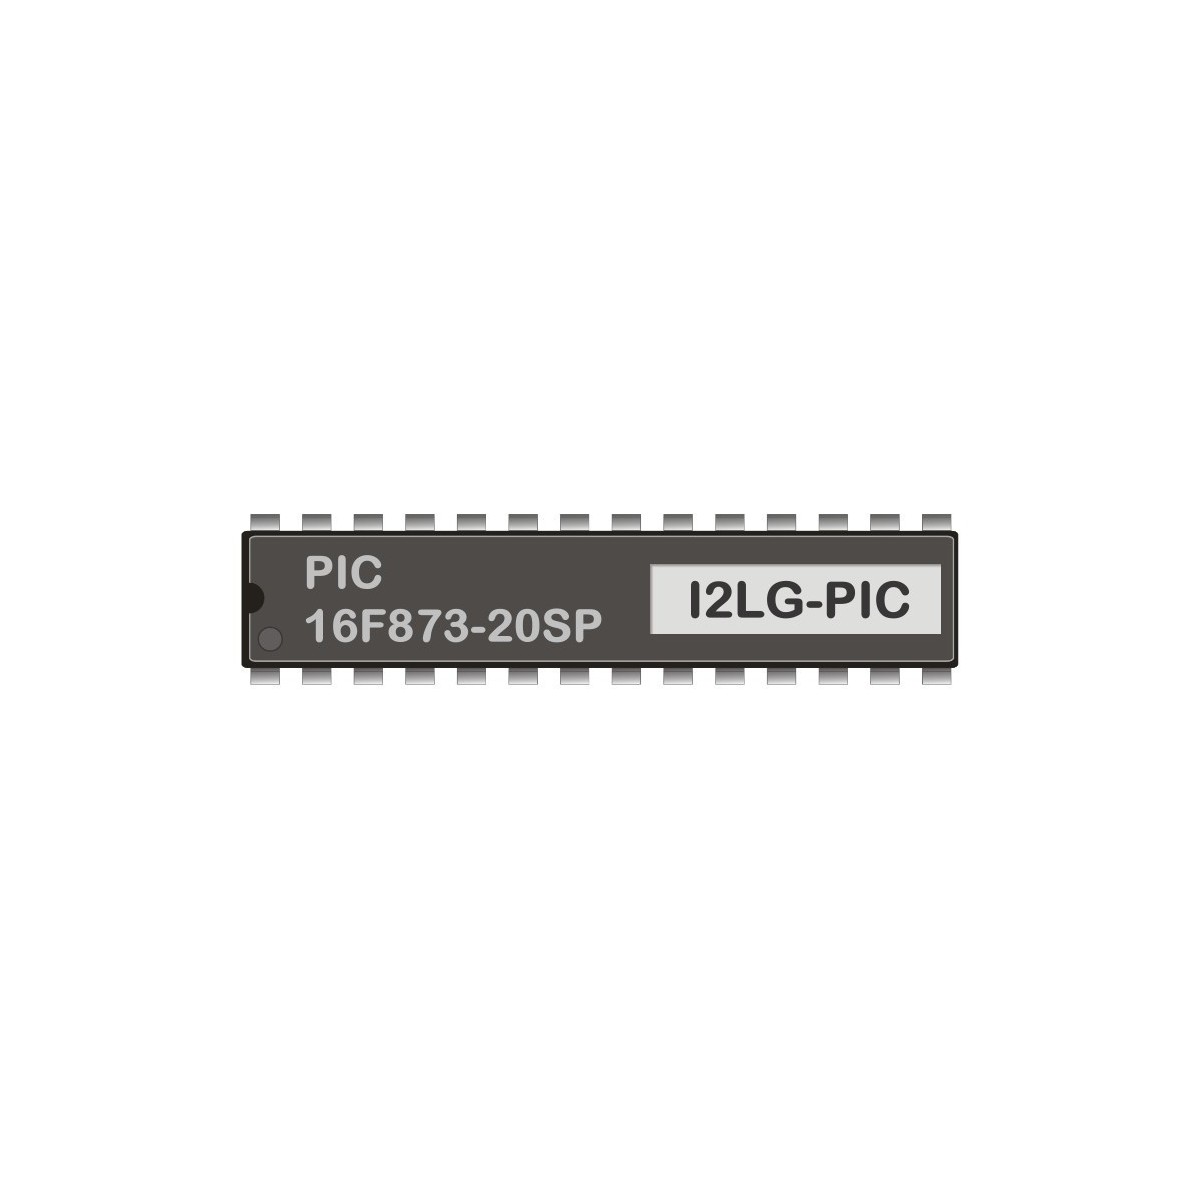 PIC 16F873-20SP programmiert für LCD-Gateway